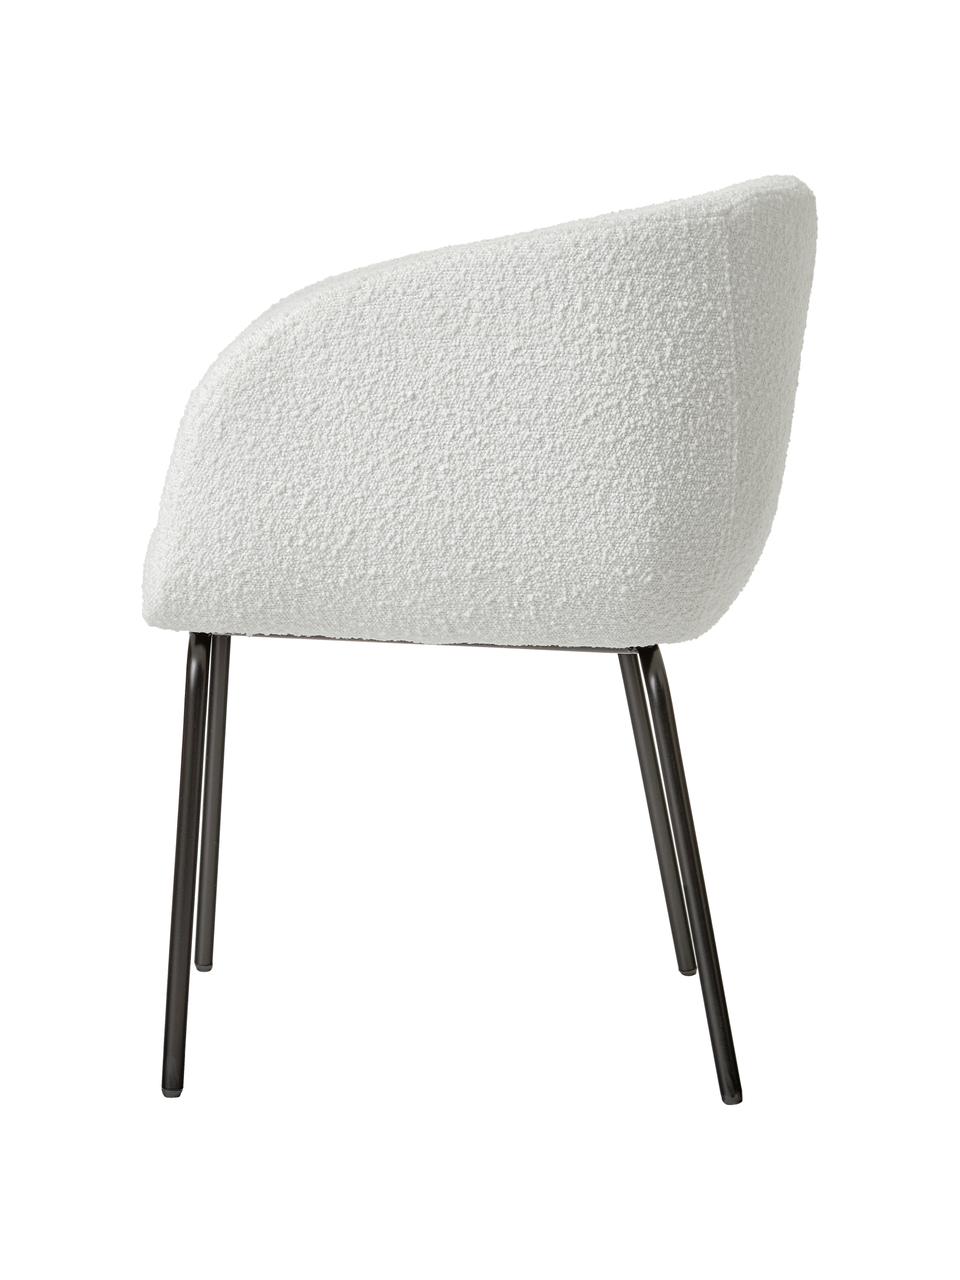 Bouclé fauteuils Alani in wit, 2 stuks, Bekleding: 80 % polyester, 20 % acry, Poten: gepoedercoat metaal, Wit, B 58 x H 78 cm